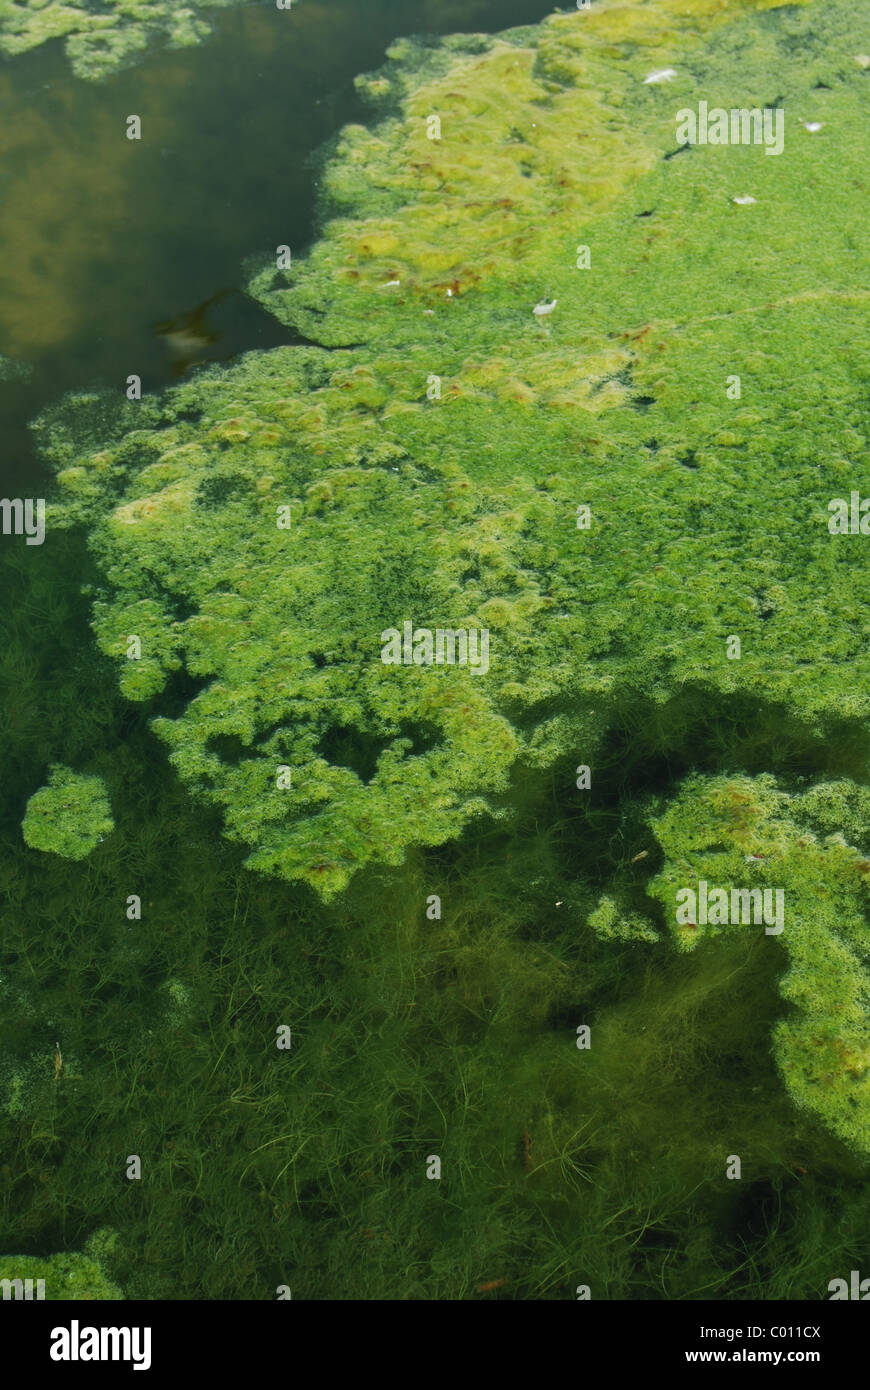 Las algas verdes de fondo de pantano Foto de stock